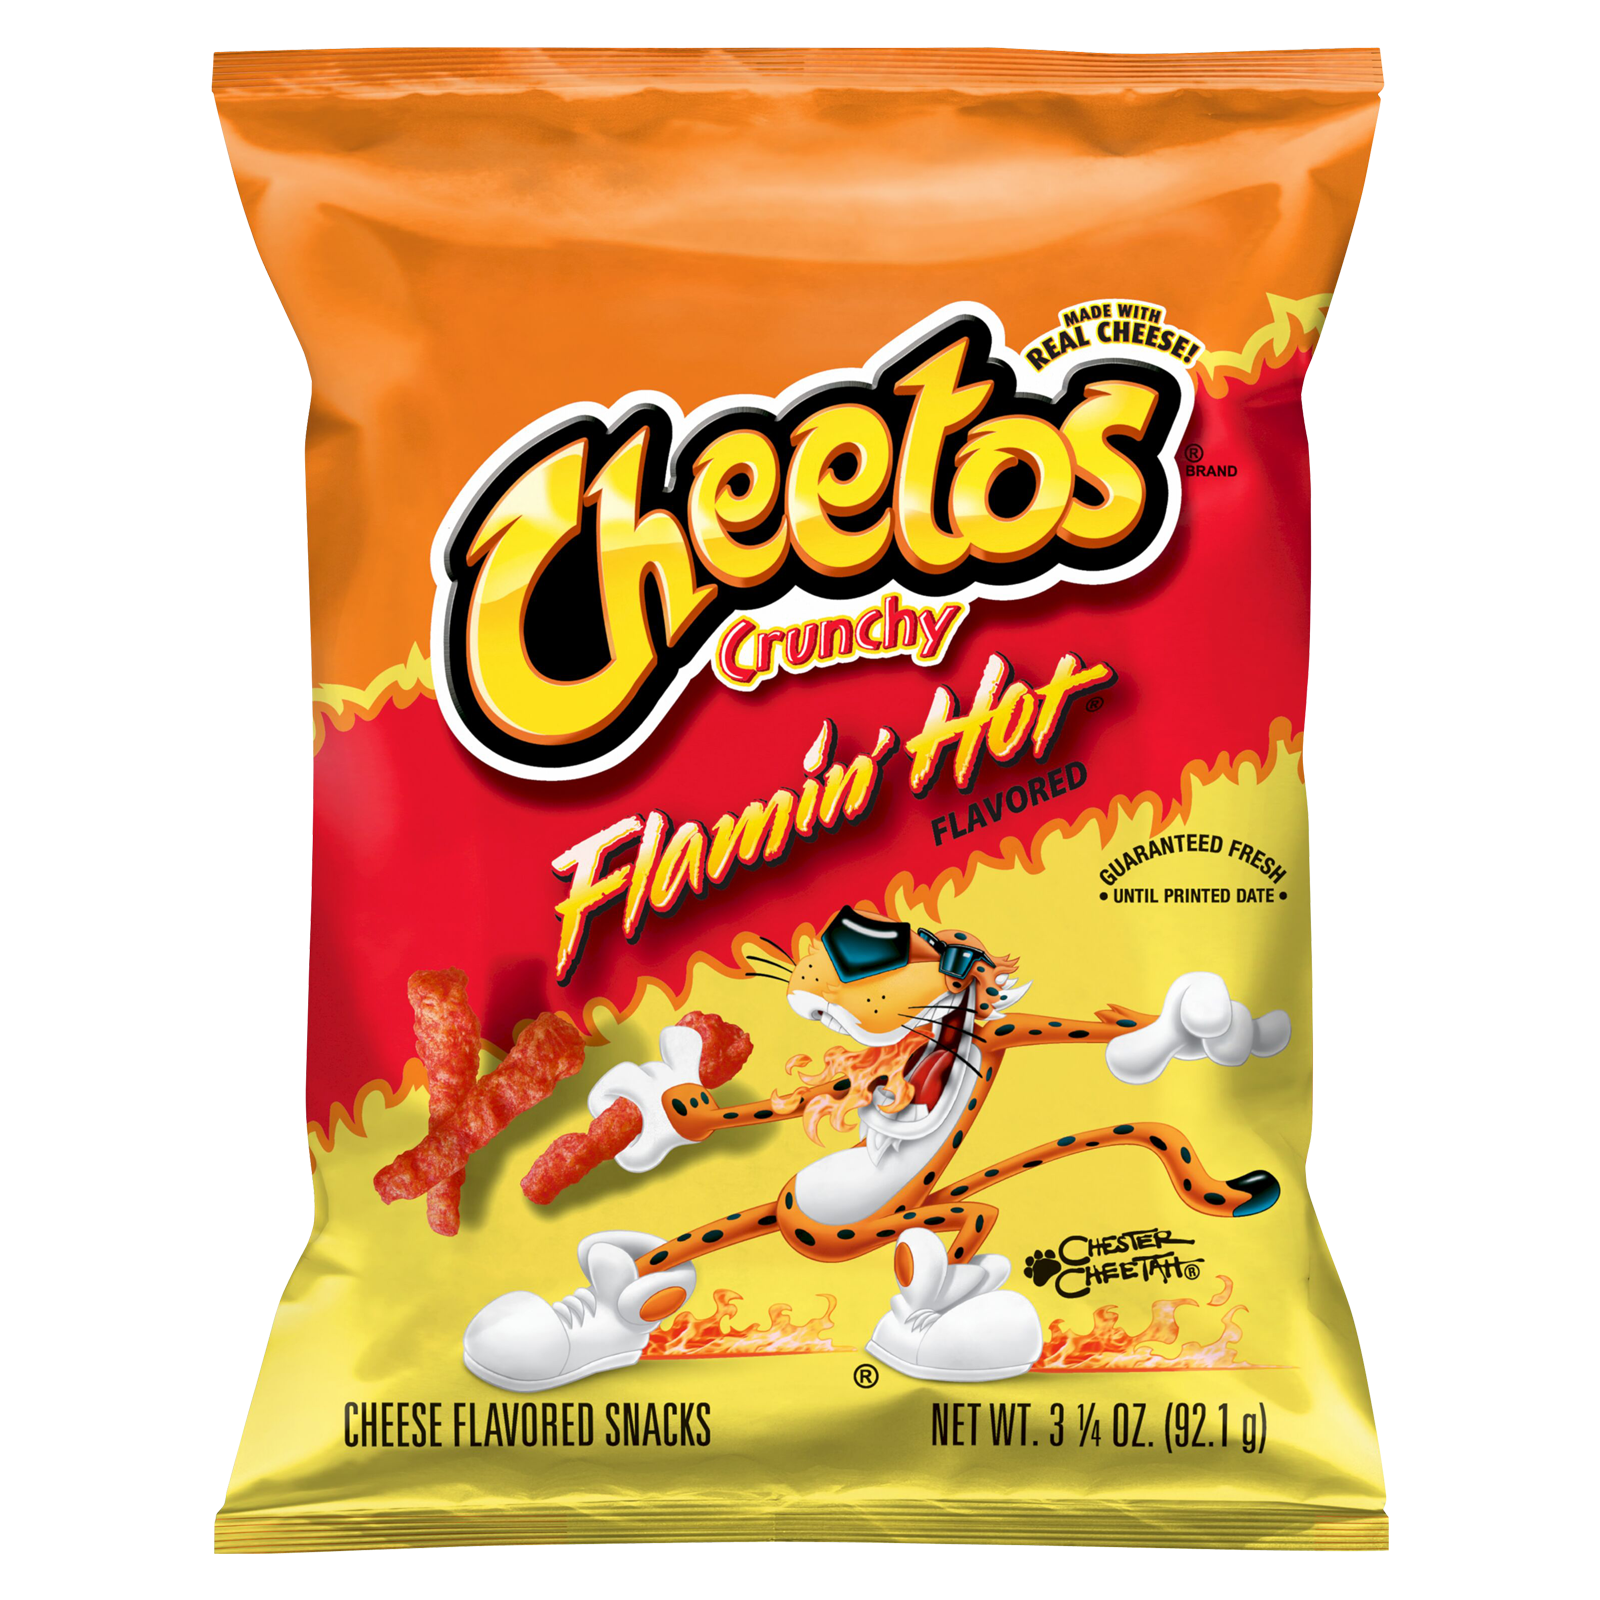 Cheetos Crunchy Flamin' Hot 3.25oz